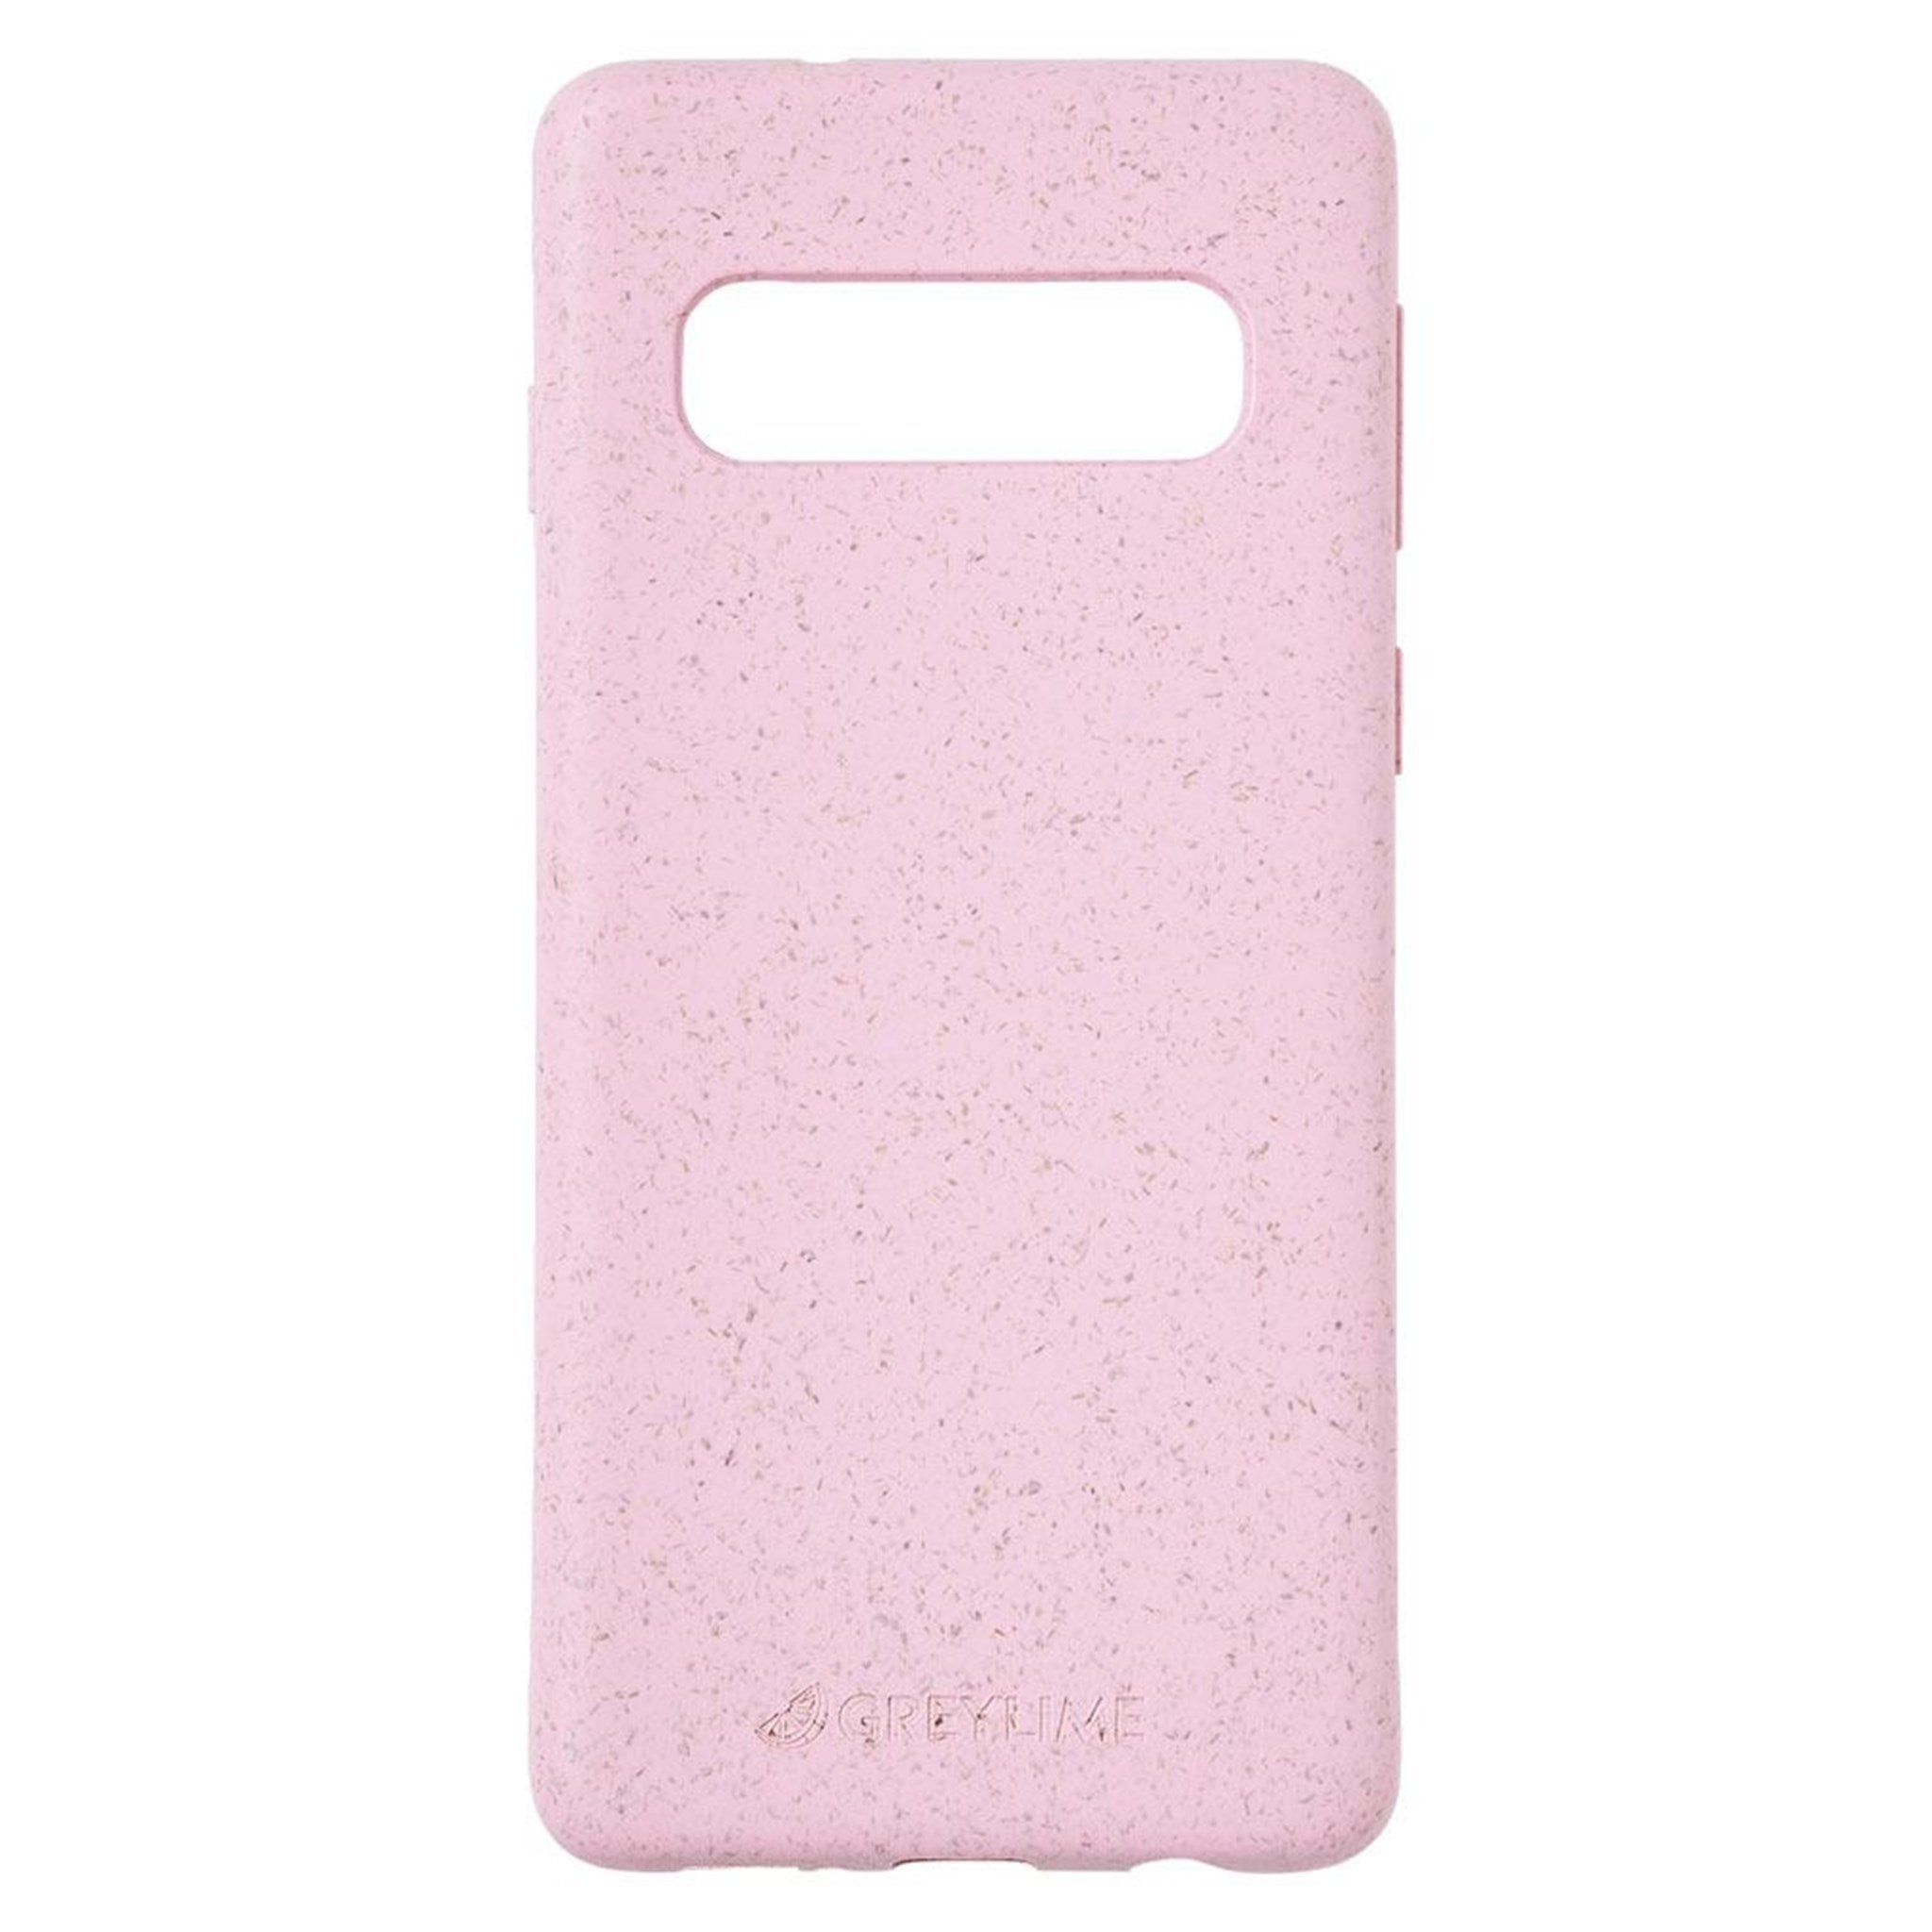 Billede af GreyLime Samsung Galaxy S10 Miljøvenligt Cover Pink hos GreyLime